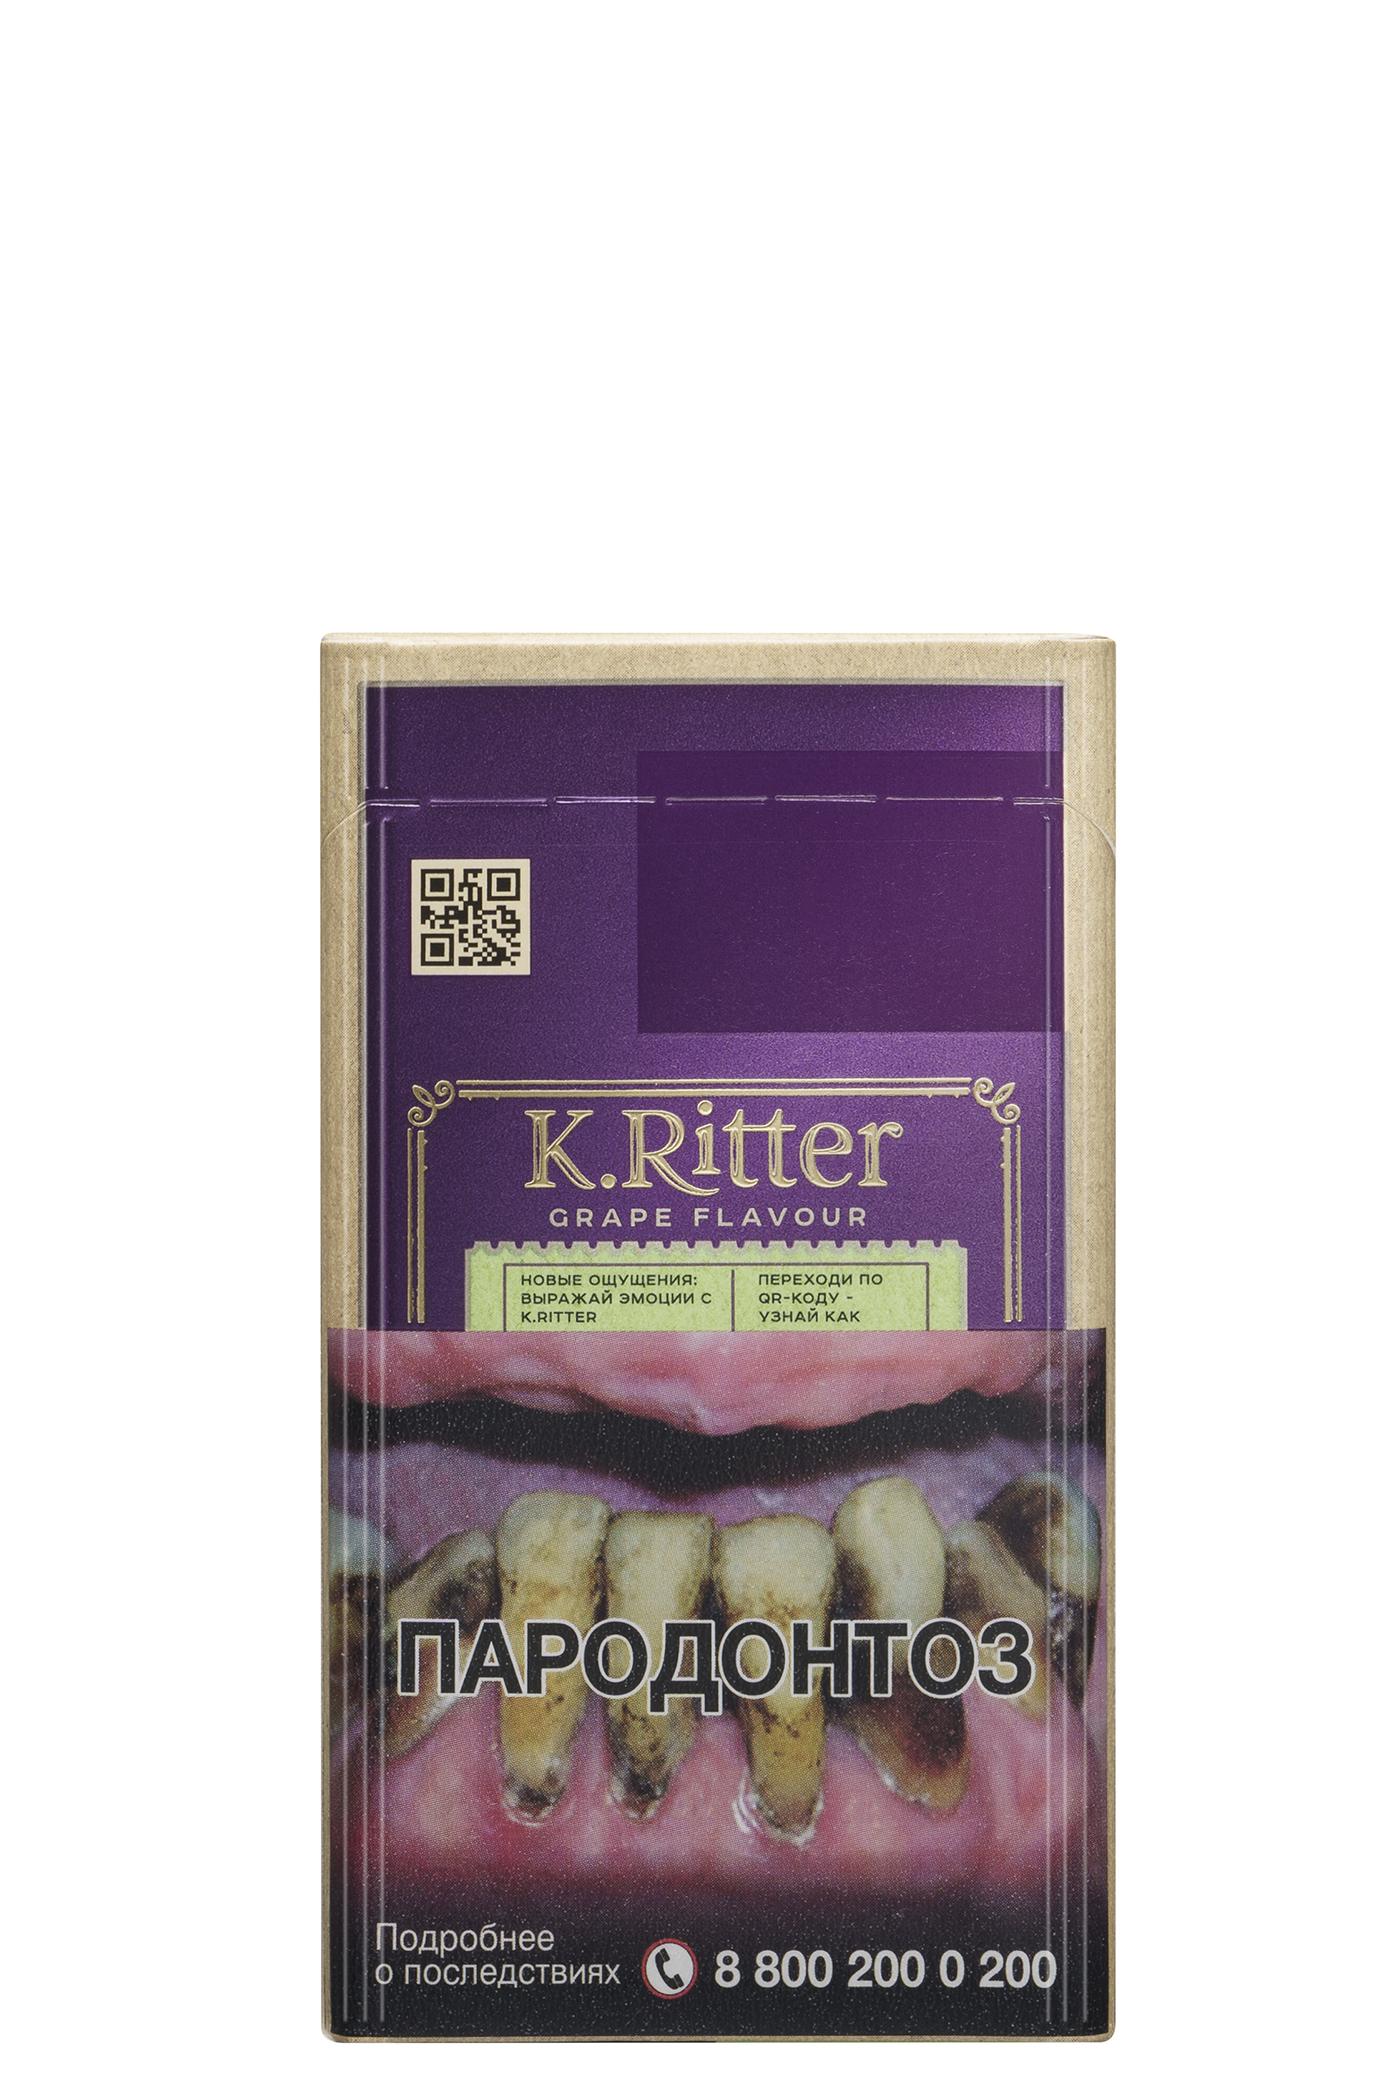 Ritter сигареты купить. Риттер компакт сигареты. Сигареты k.Ritter компакт. Капитан Риттер сигареты. Ritter Compact сигареты.